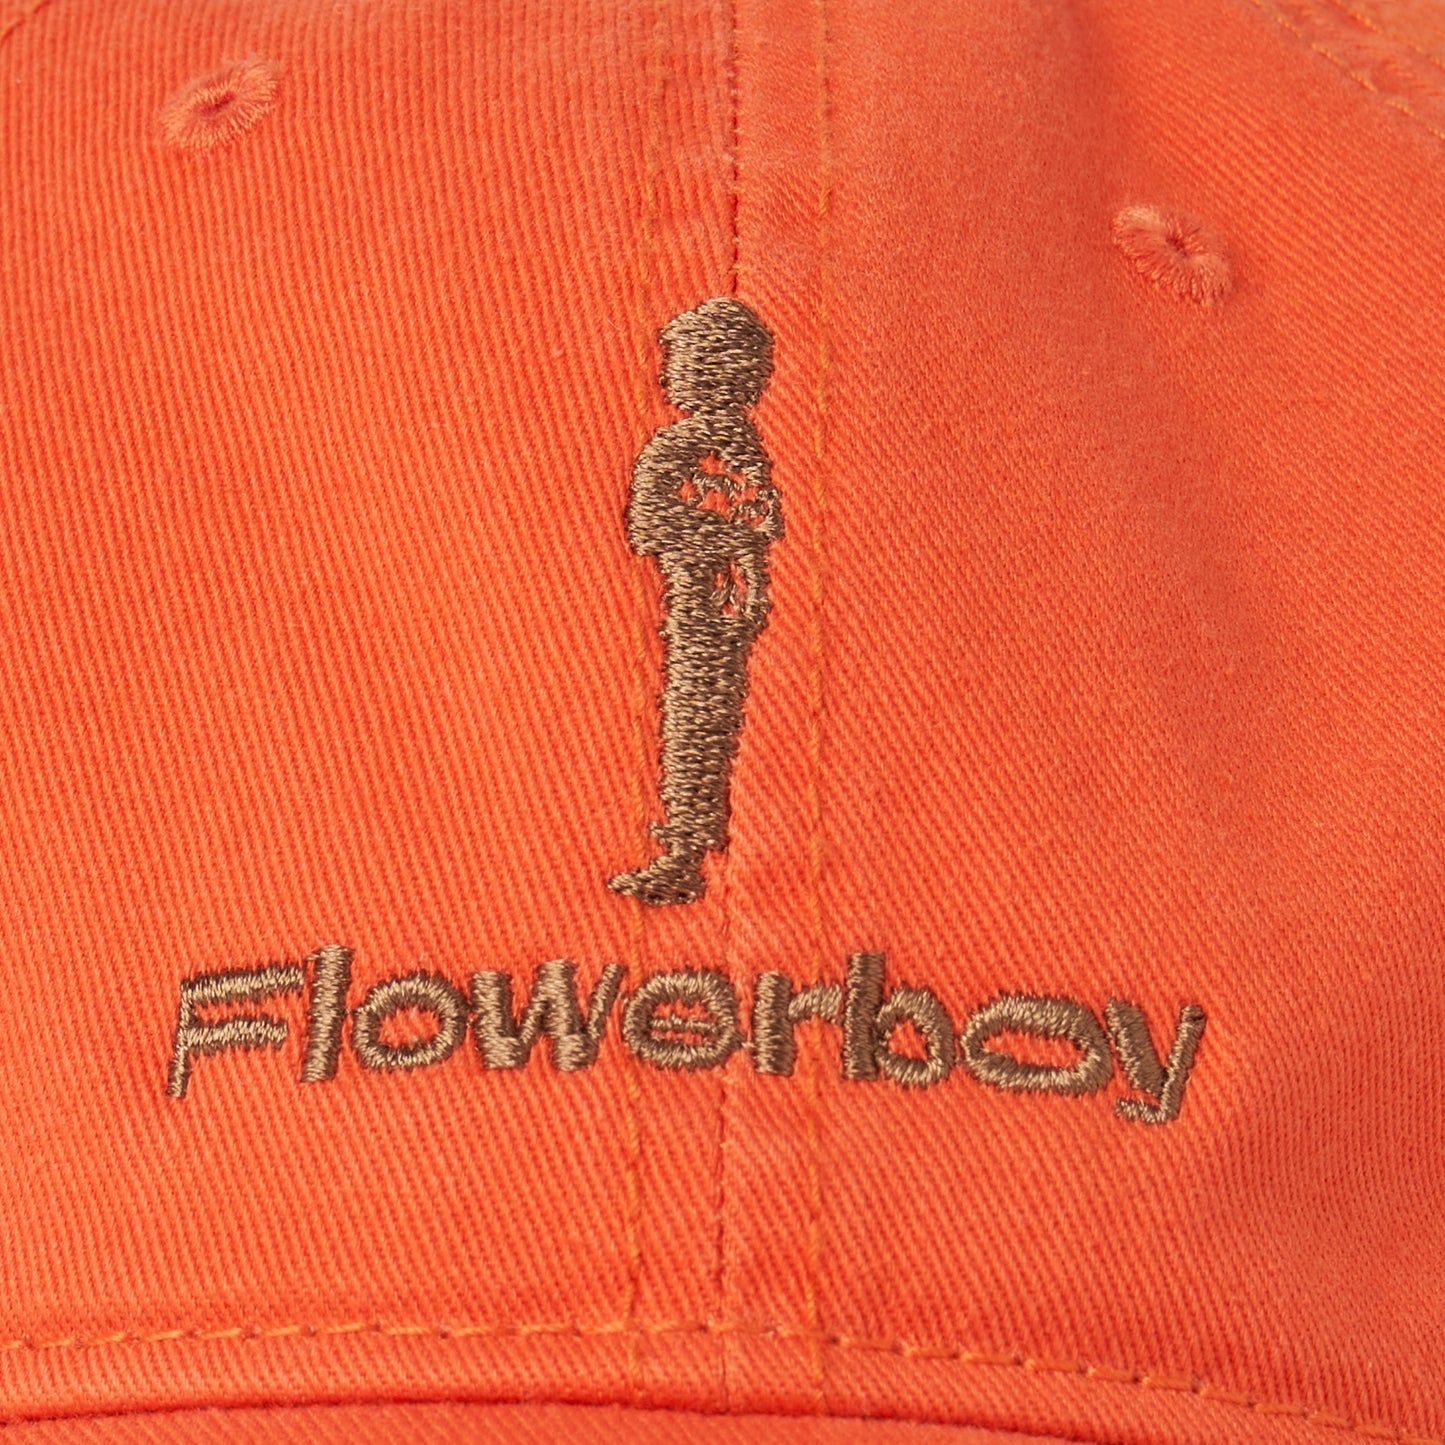 FLOWERBOY PROJECT EMBROIDERED LOGO DAD HAT | ORANGE & BRONZE - DETAIL